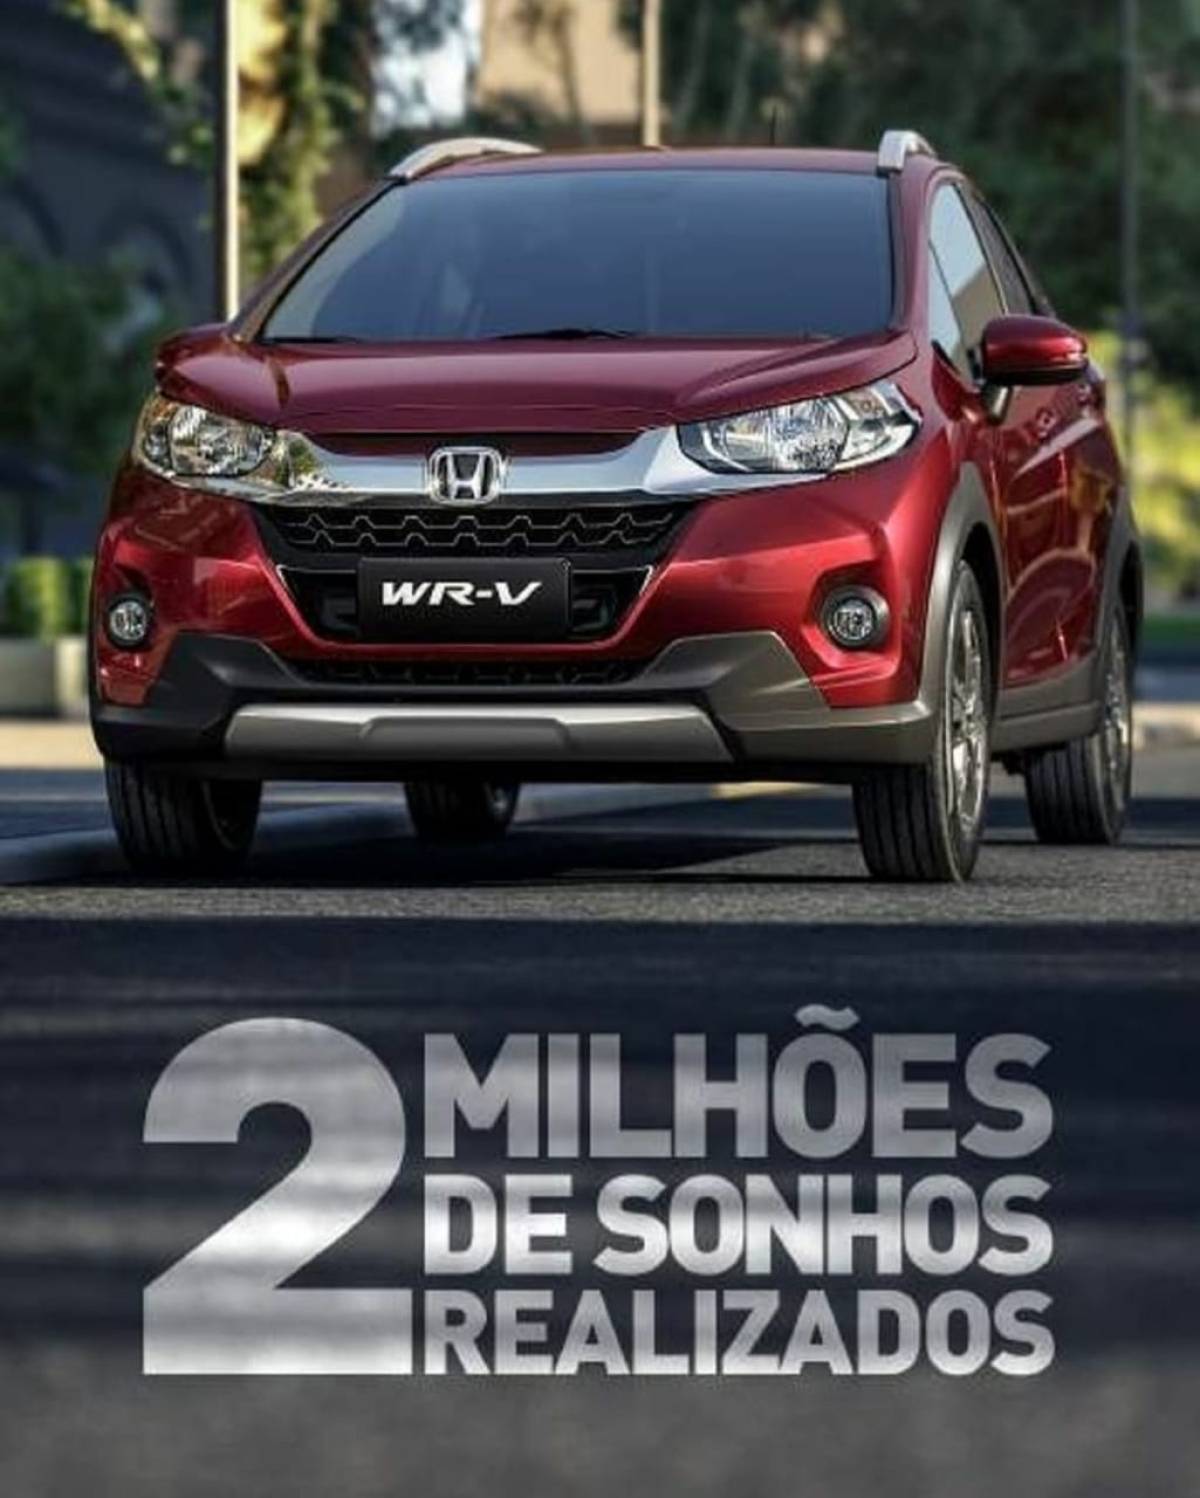 2 MILHÕES DE SONHOS REALIZADOS - Nettai Veículos - Honda Automóveis